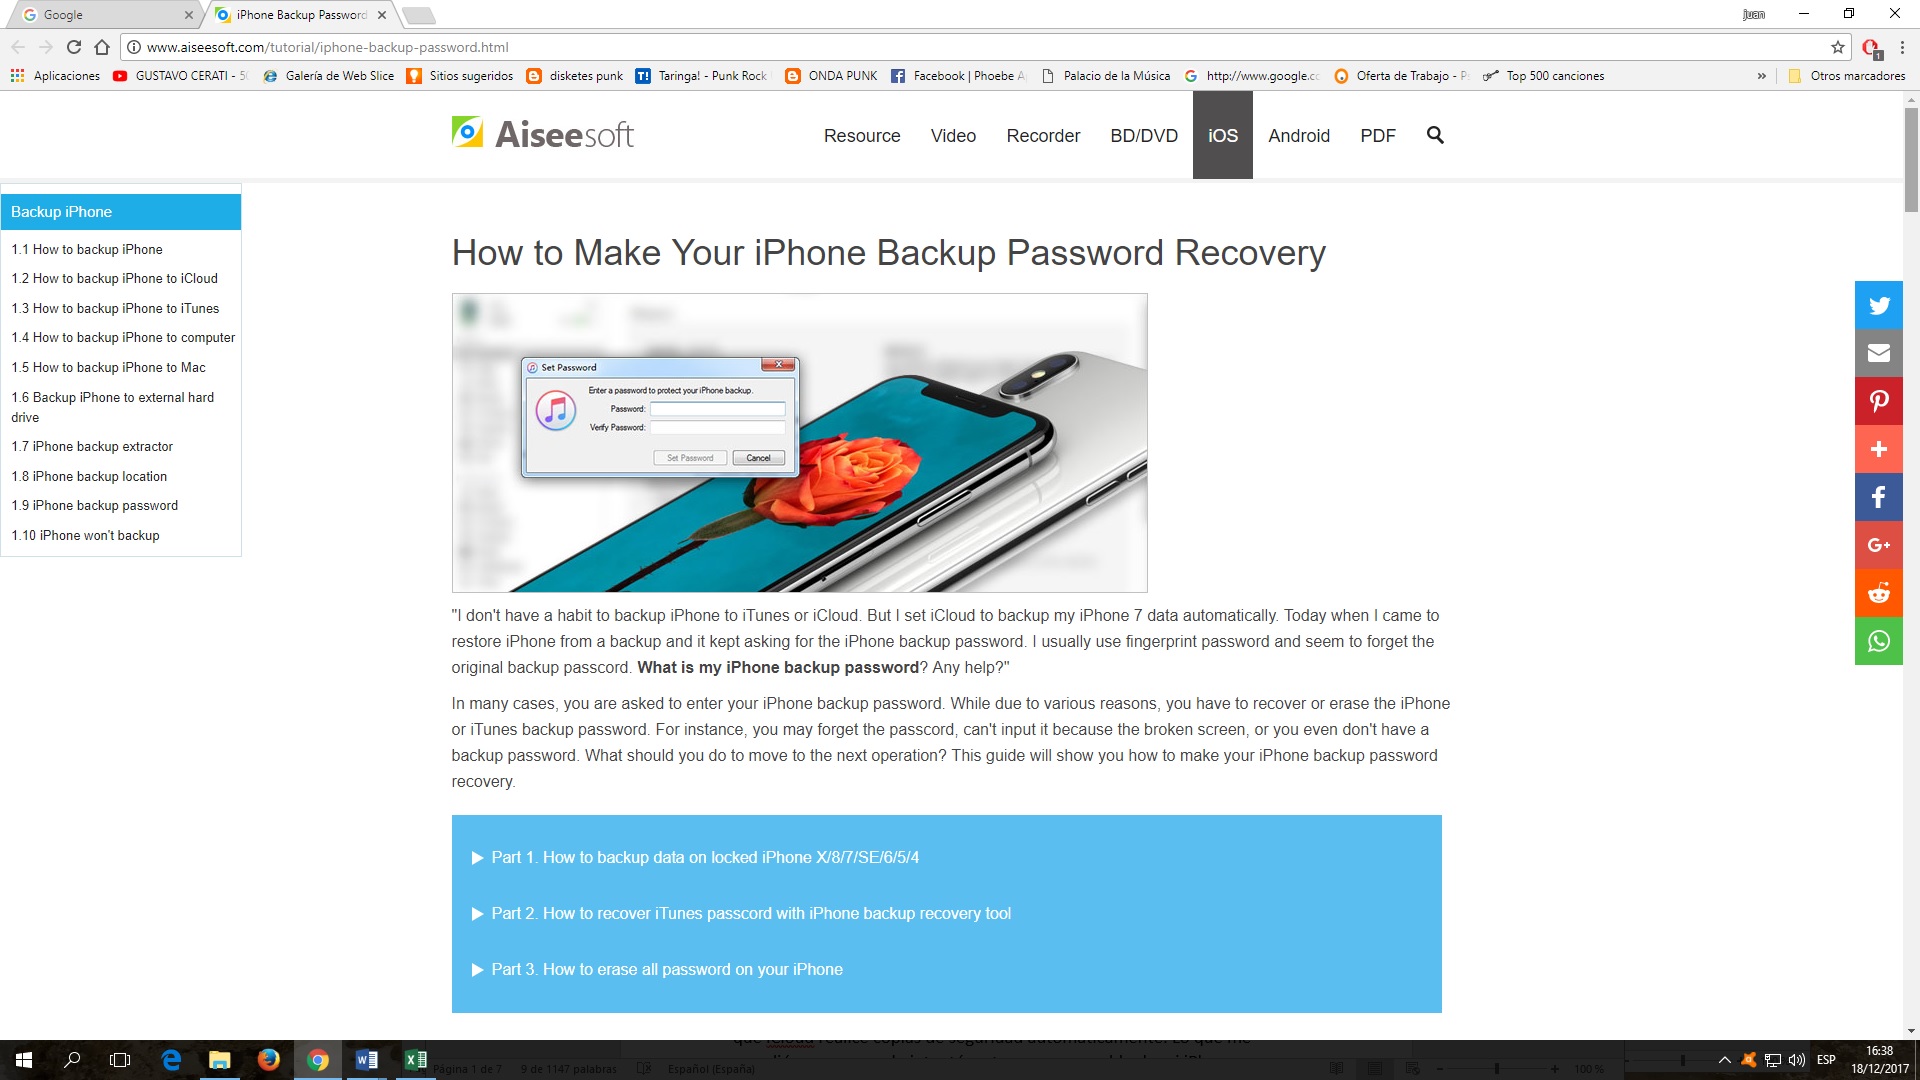  Cómo recuperar copias de seguridad con contraseña en iPhone